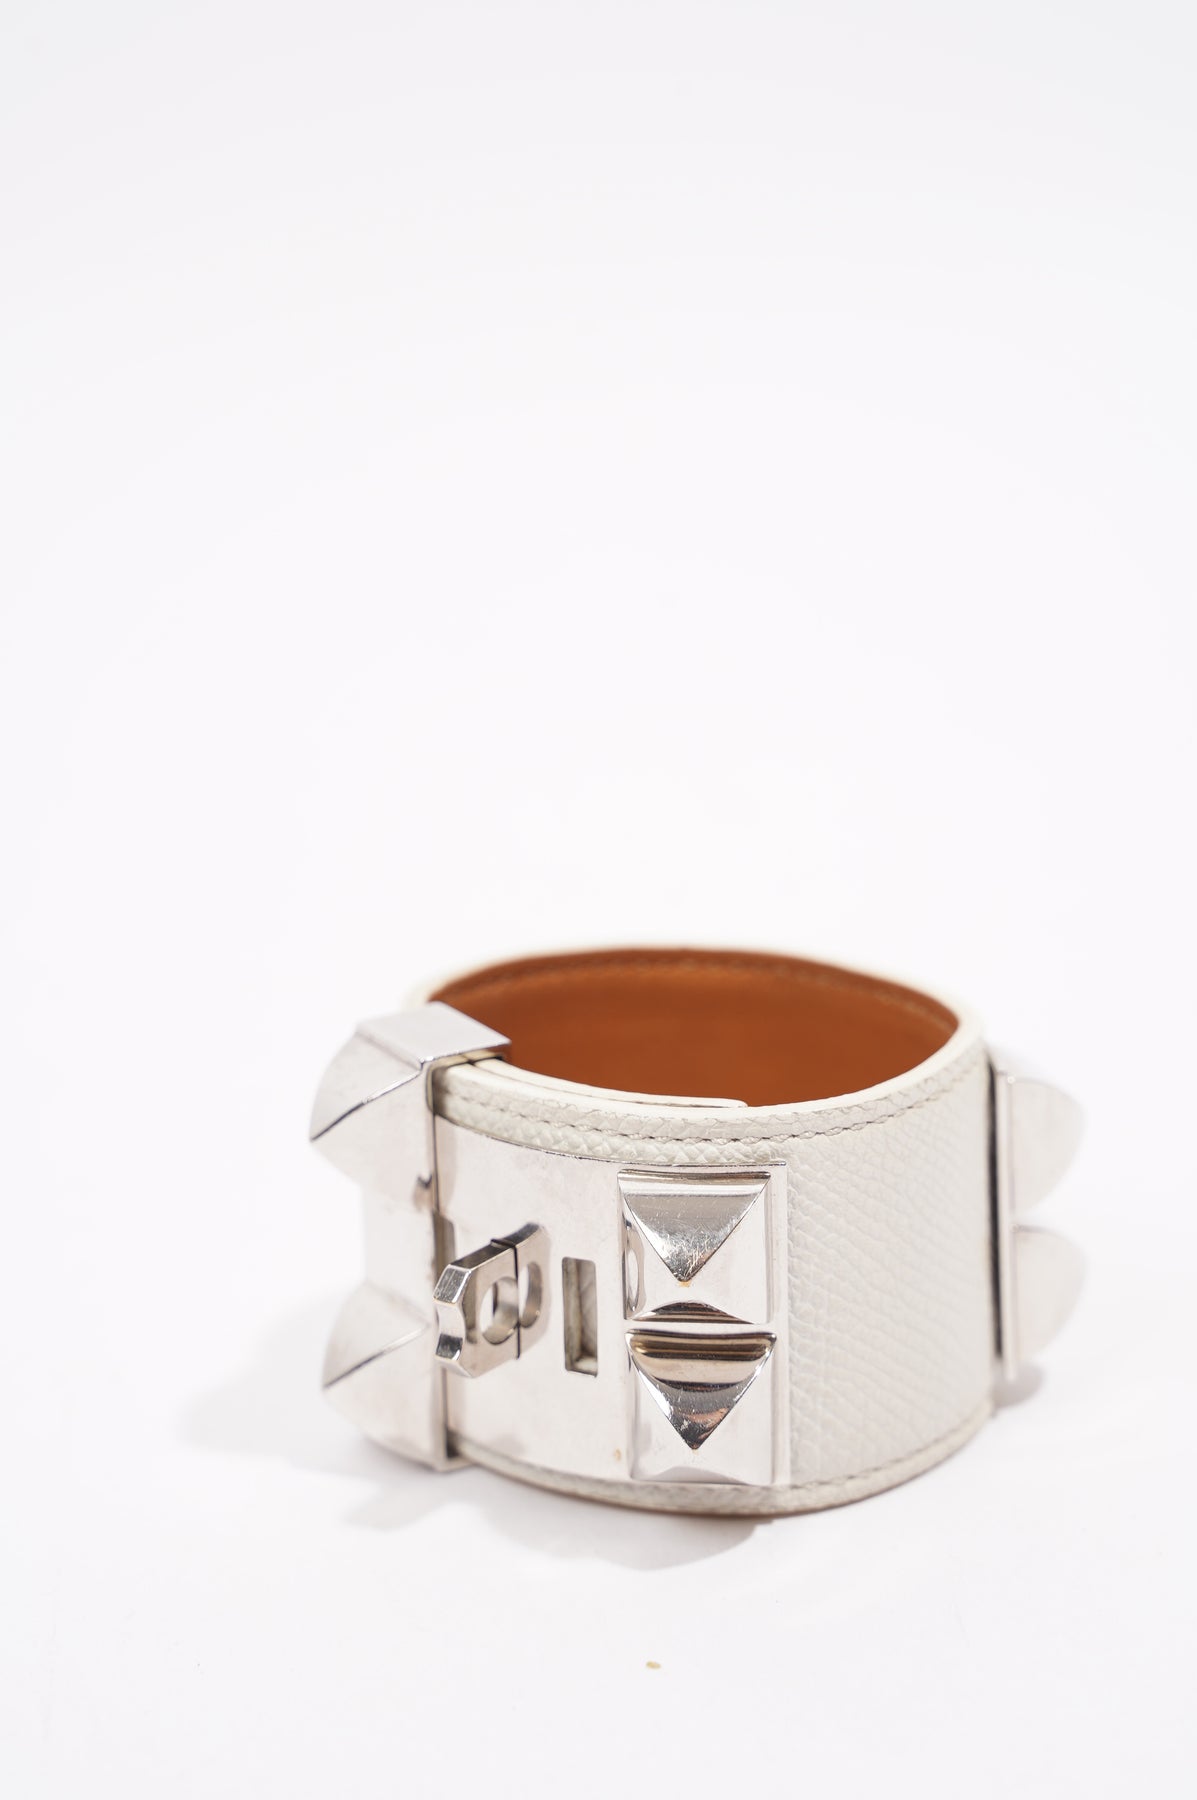 Hermès Collier de Chien Bracelet Fauve Barenia Leather